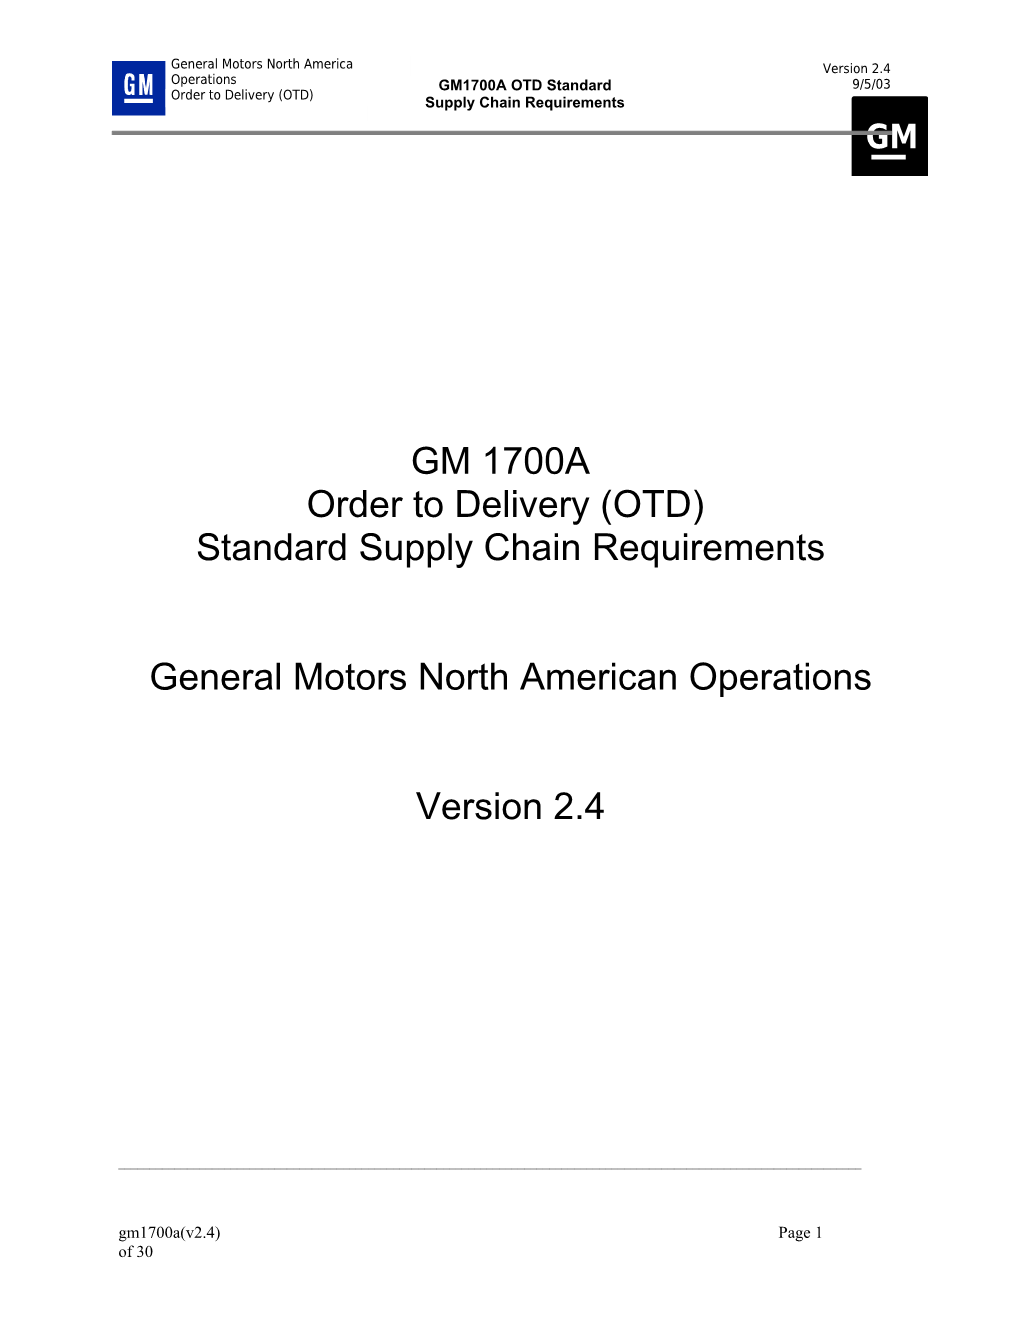 GM 1700 - Production Control & Logistics SOR